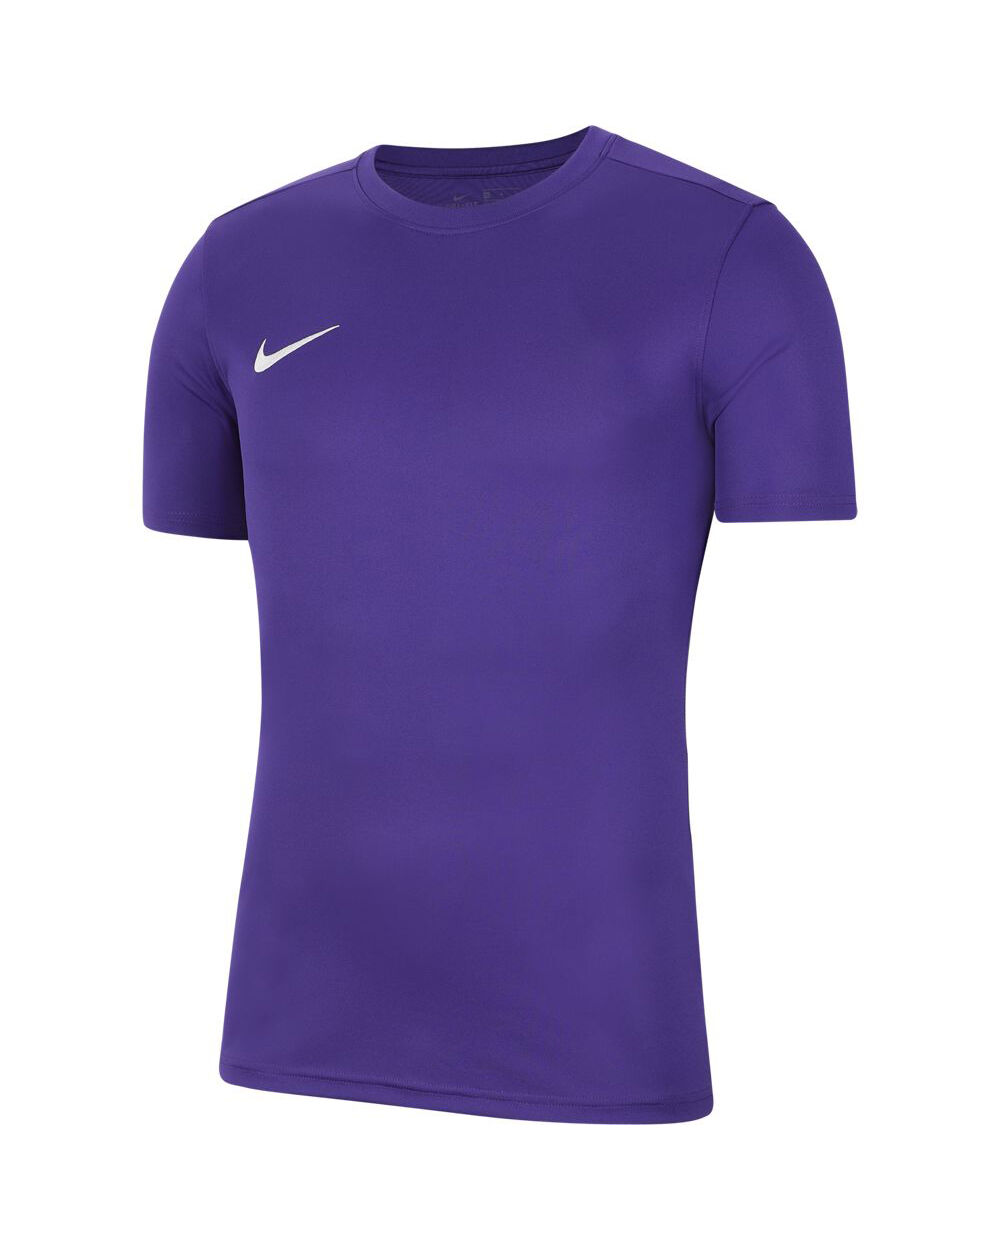 Camiseta Nike Park VII Violeta para Niño - BV6741-547